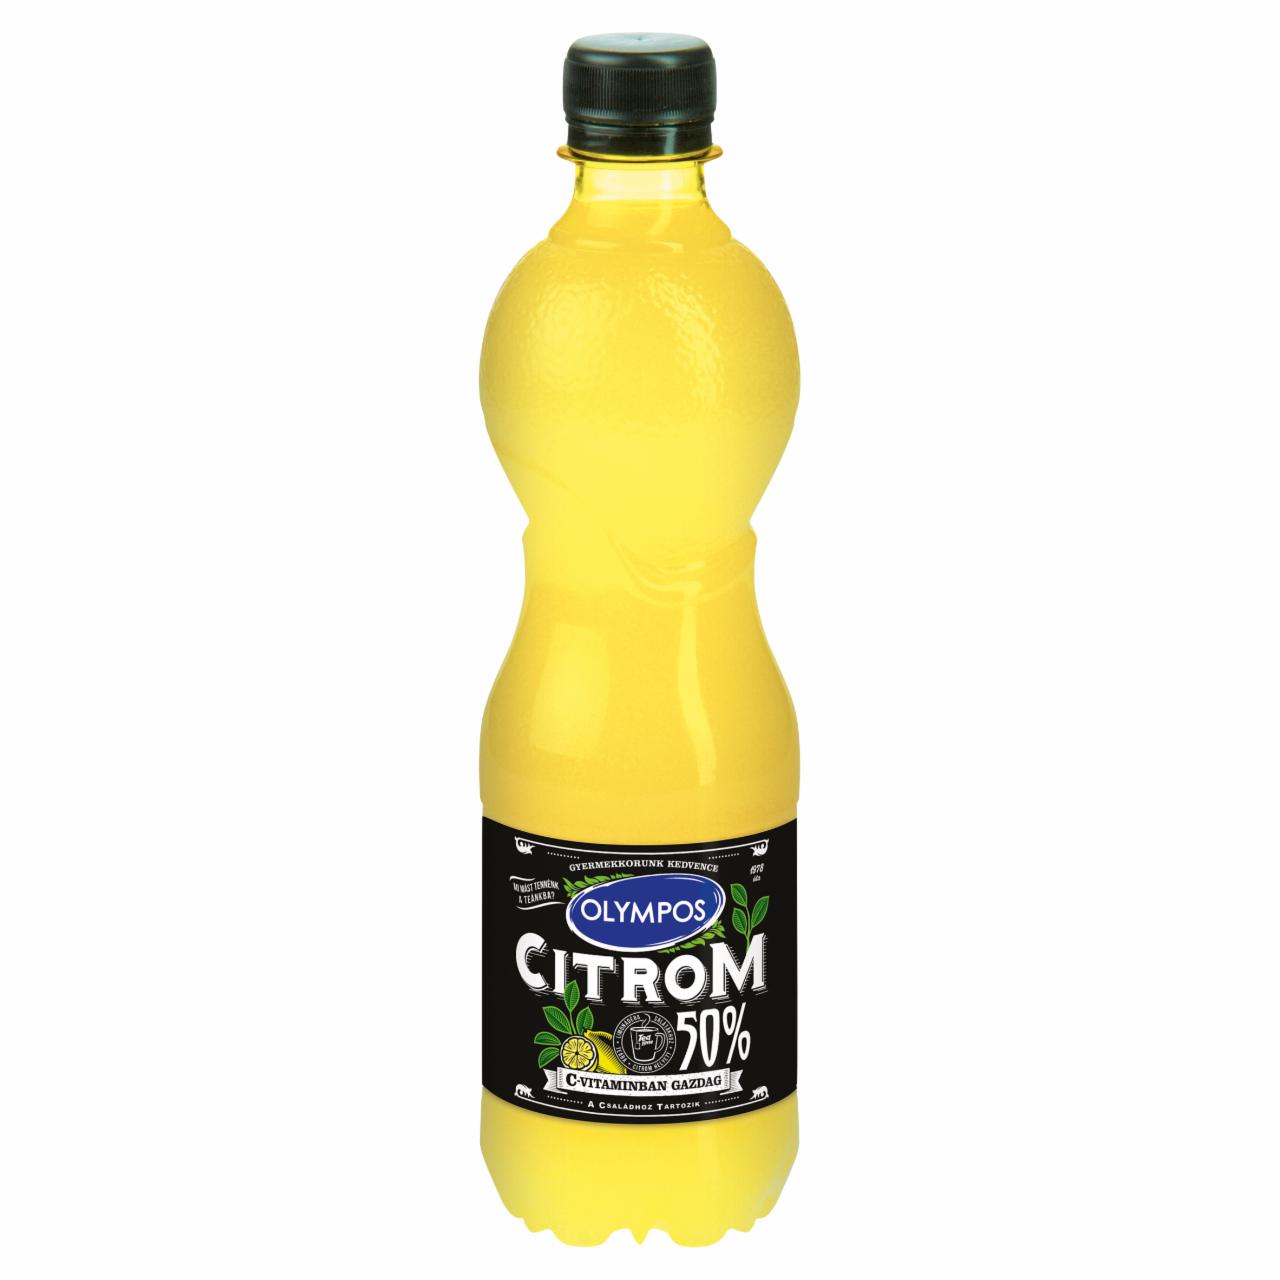 Képek - Olympos citrom ízesítő 50% citromlé tartalommal 0,5 l